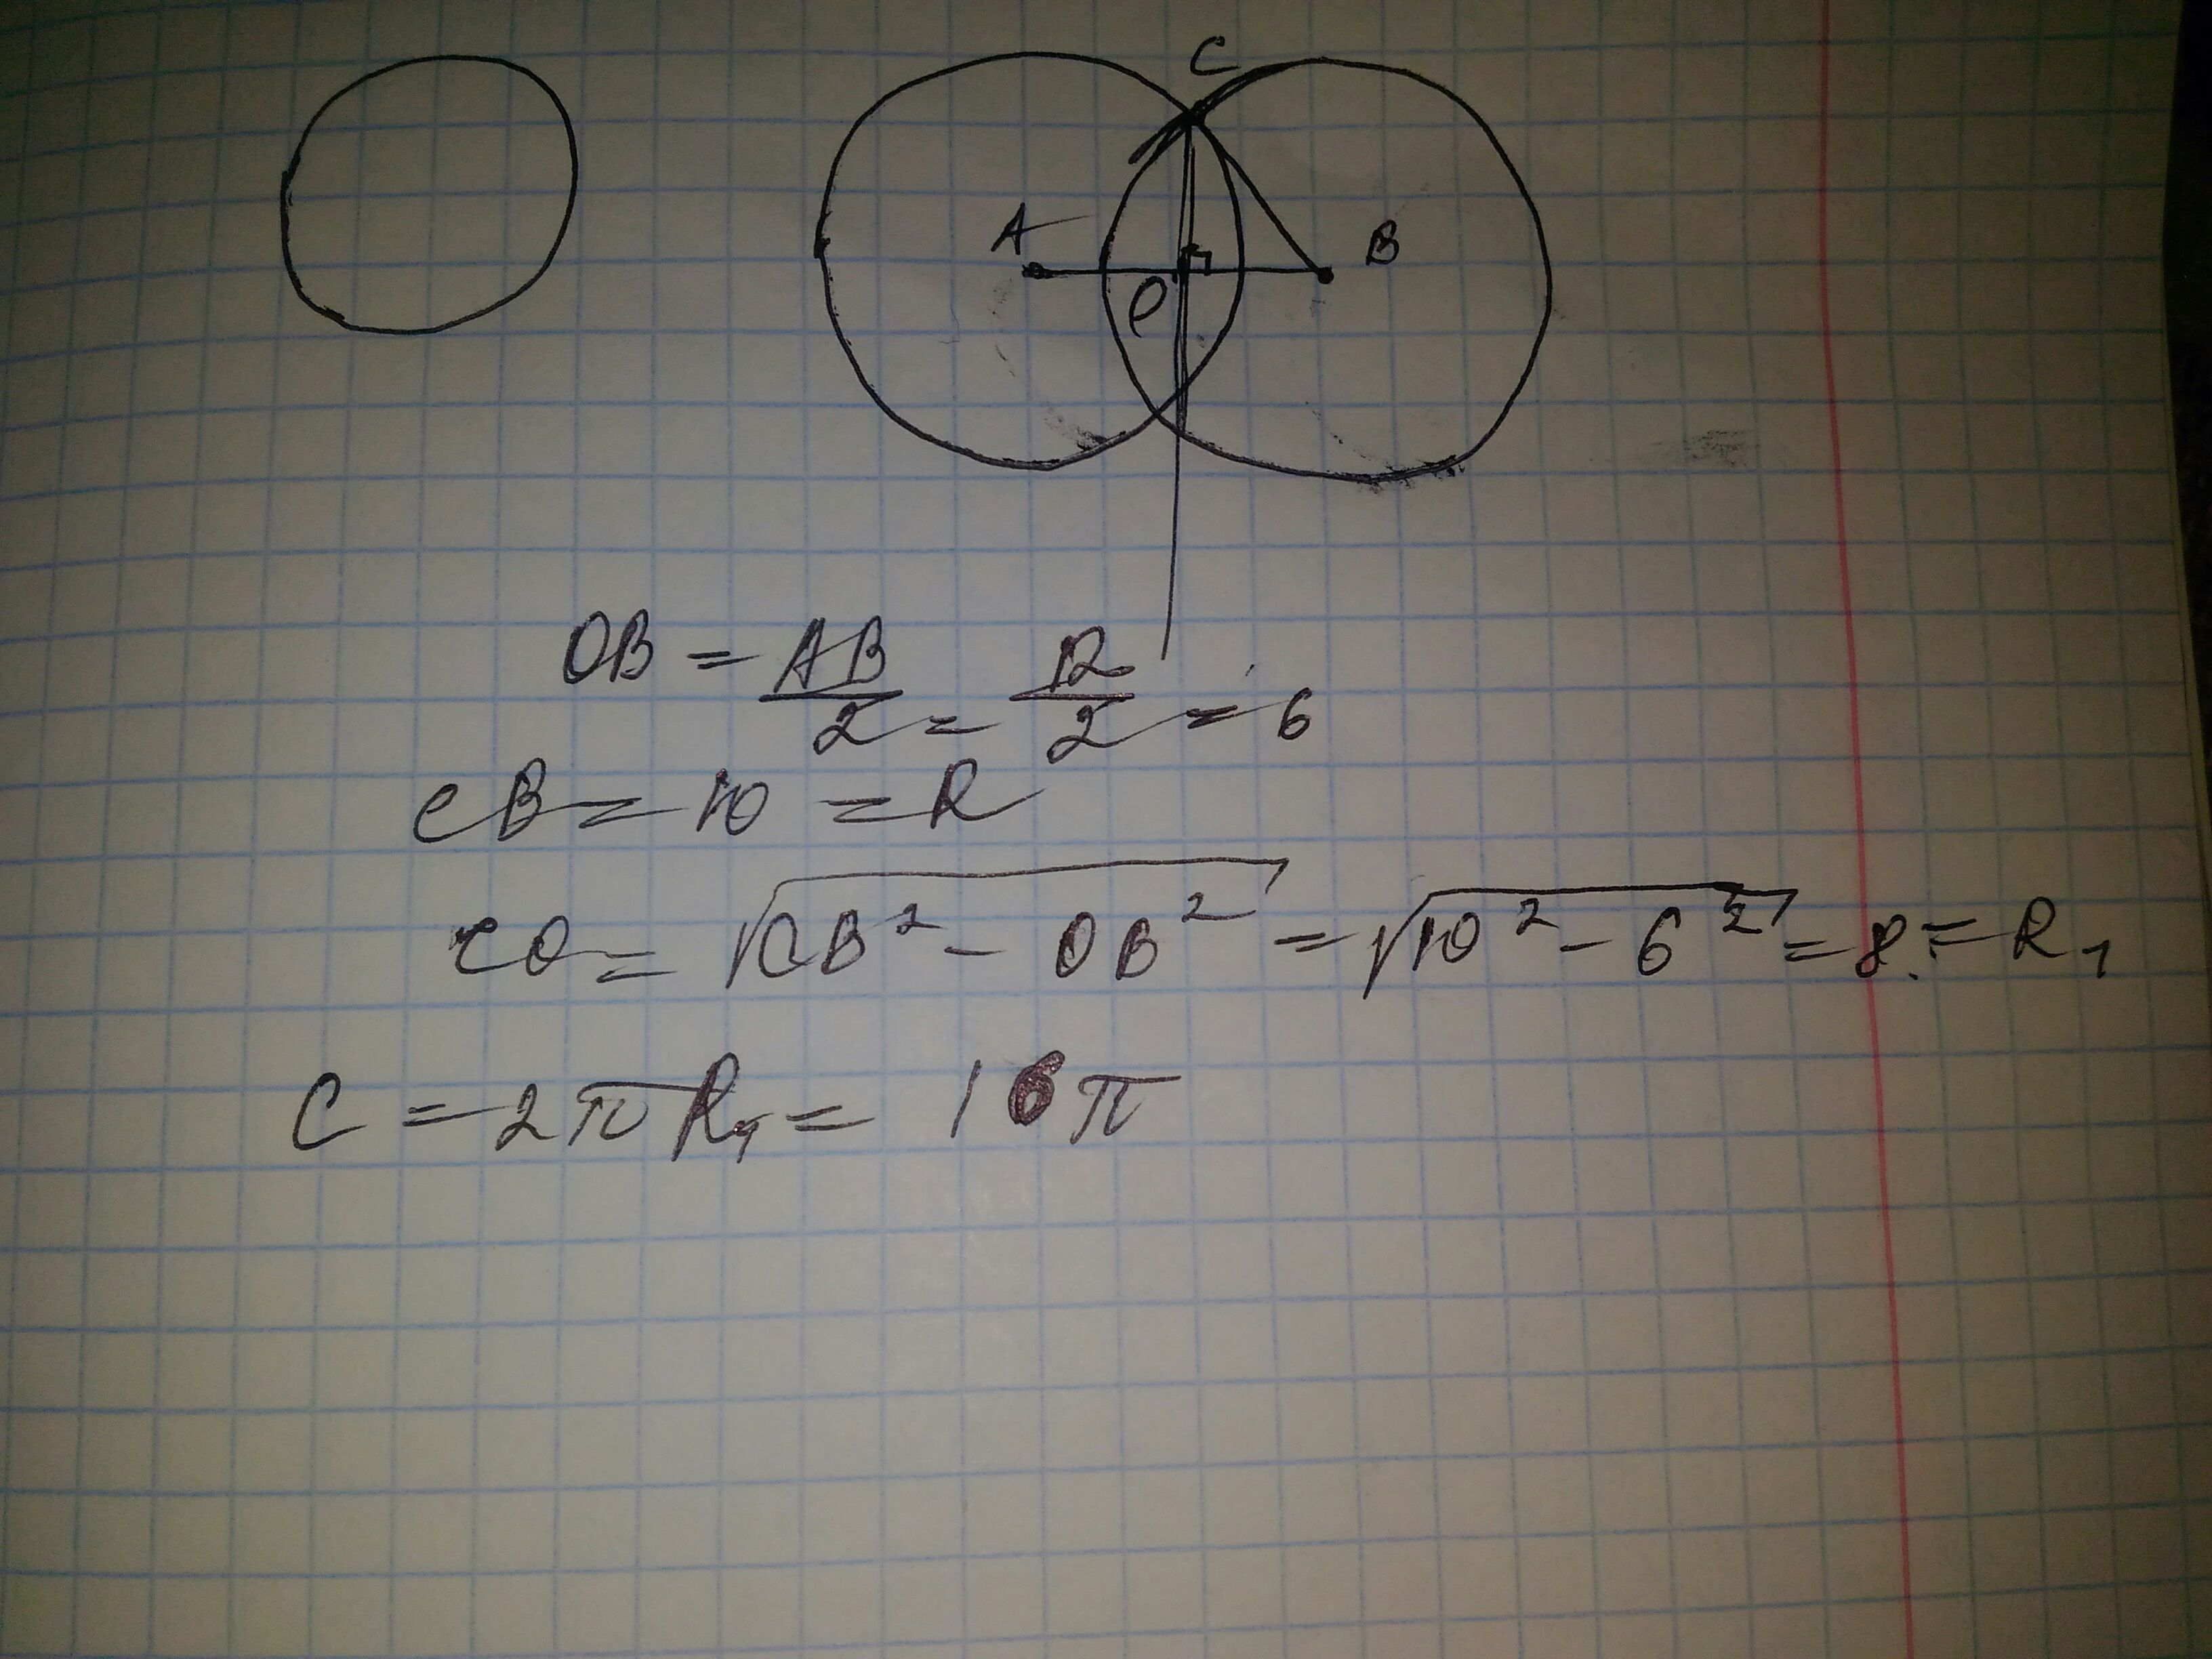 Два равных шара расположены так. Окружность радиусом 10 см. Расстояние между центрами двух пересекающихся окружностей. Радиус окружности получающийся при пересечении двух сфер радиуса 10см. Радиус окружности получающейся при пересечении двух сфер радиуса 10.